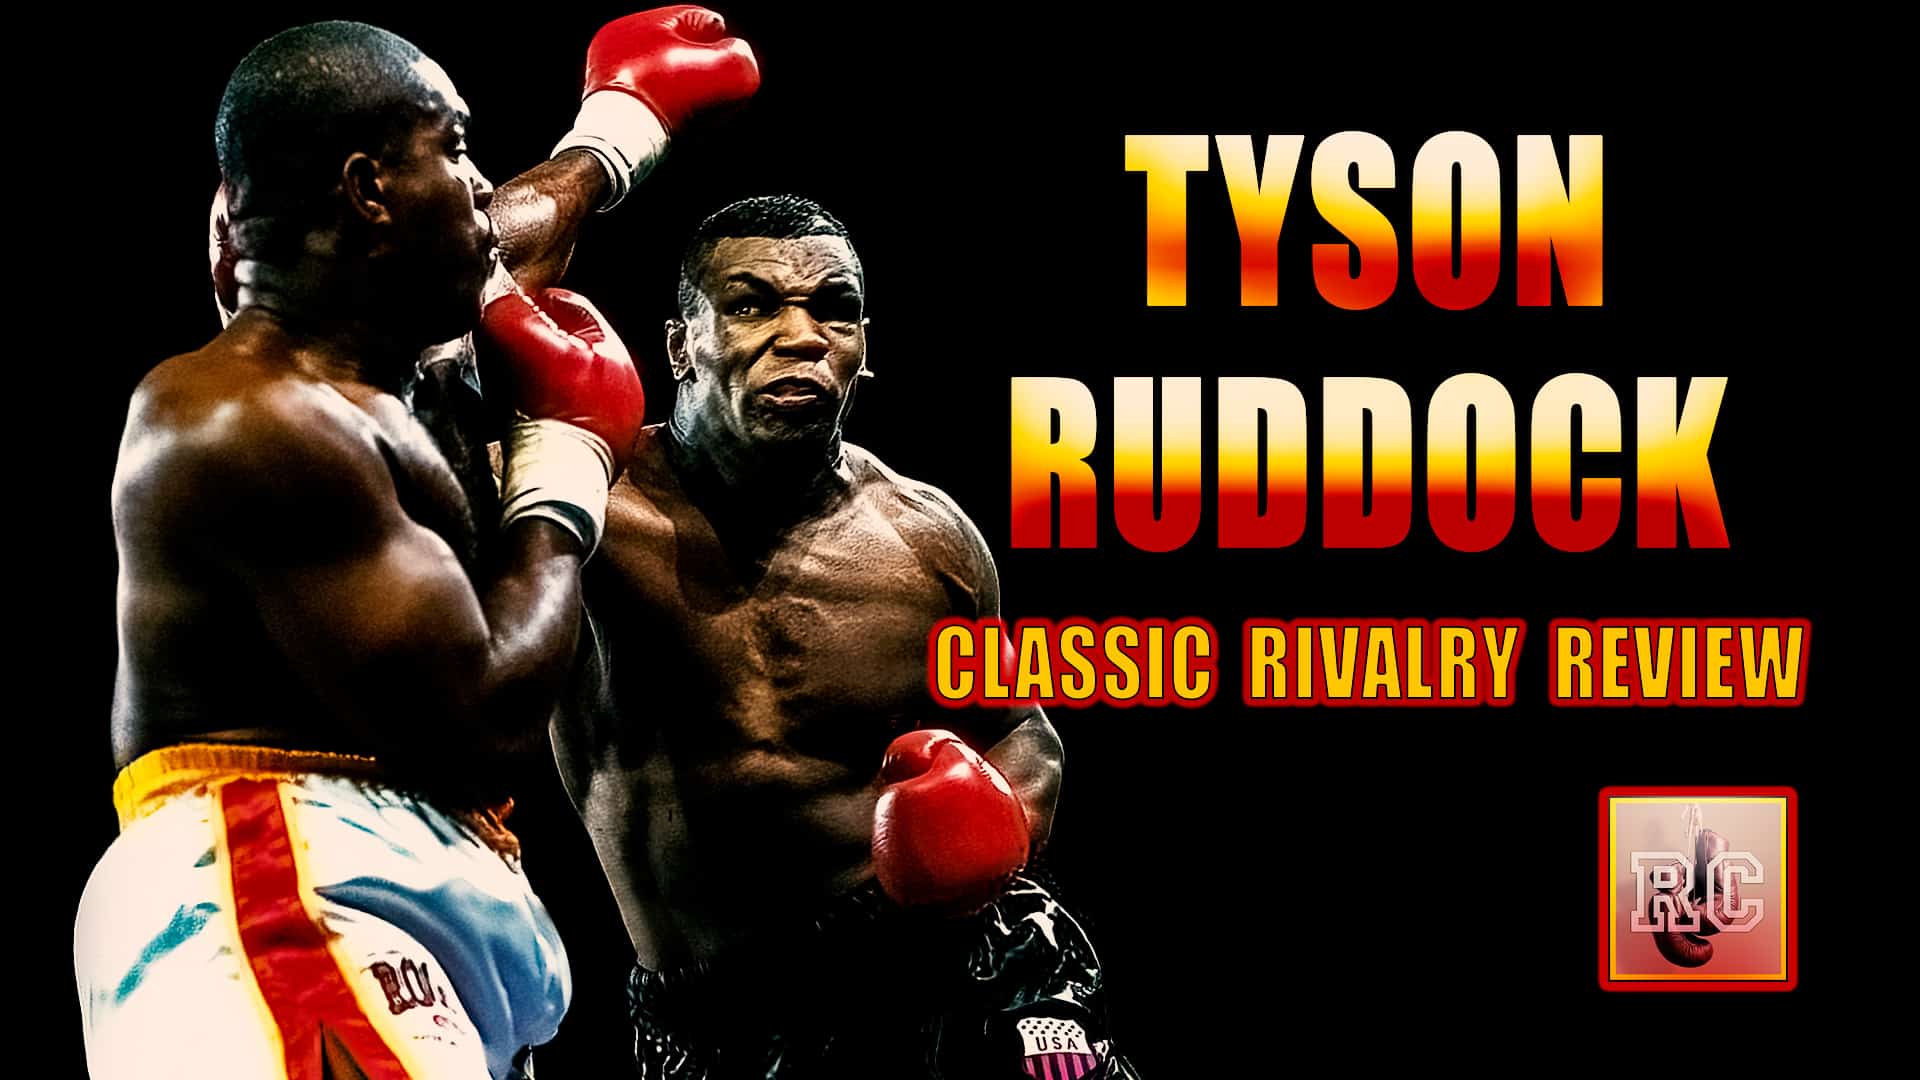 Image: VIDEO: Mike Tyson vs Razor Ruddock - Classic Rivalry Review